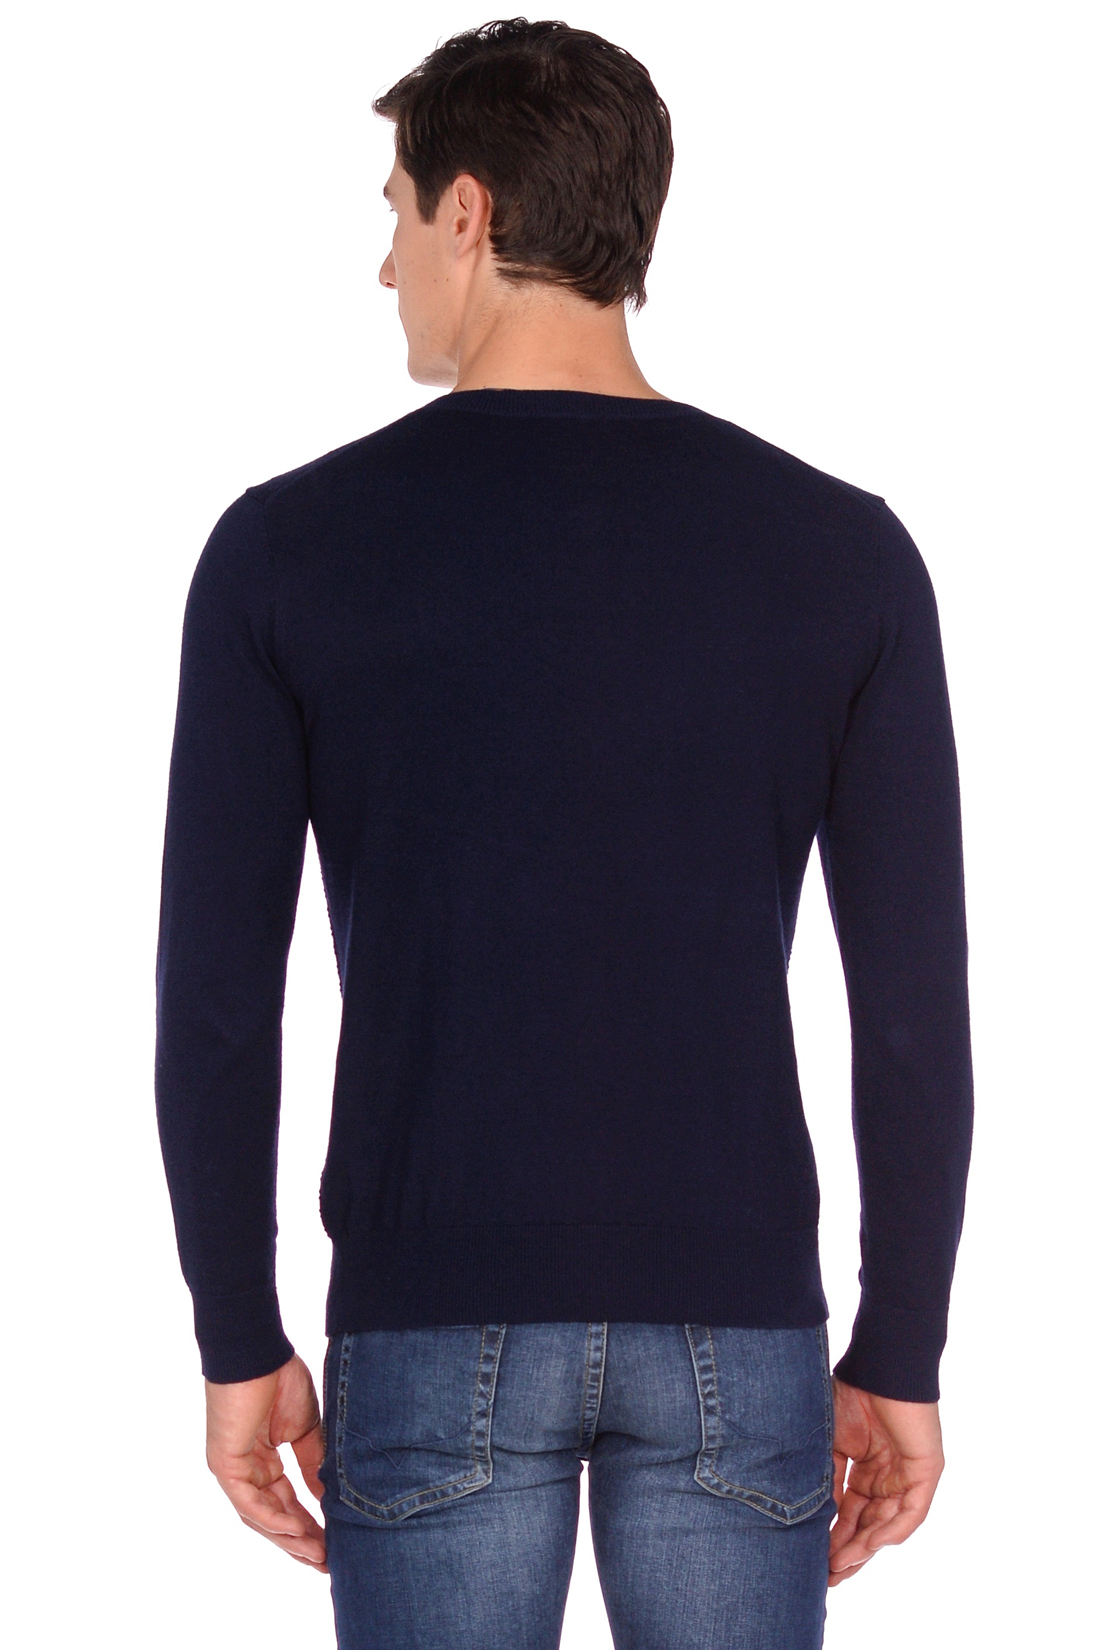 Пуловер с рельефным узором (арт. baon B638502), размер S, цвет deep navy melange#синий Пуловер с рельефным узором (арт. baon B638502) - фото 2